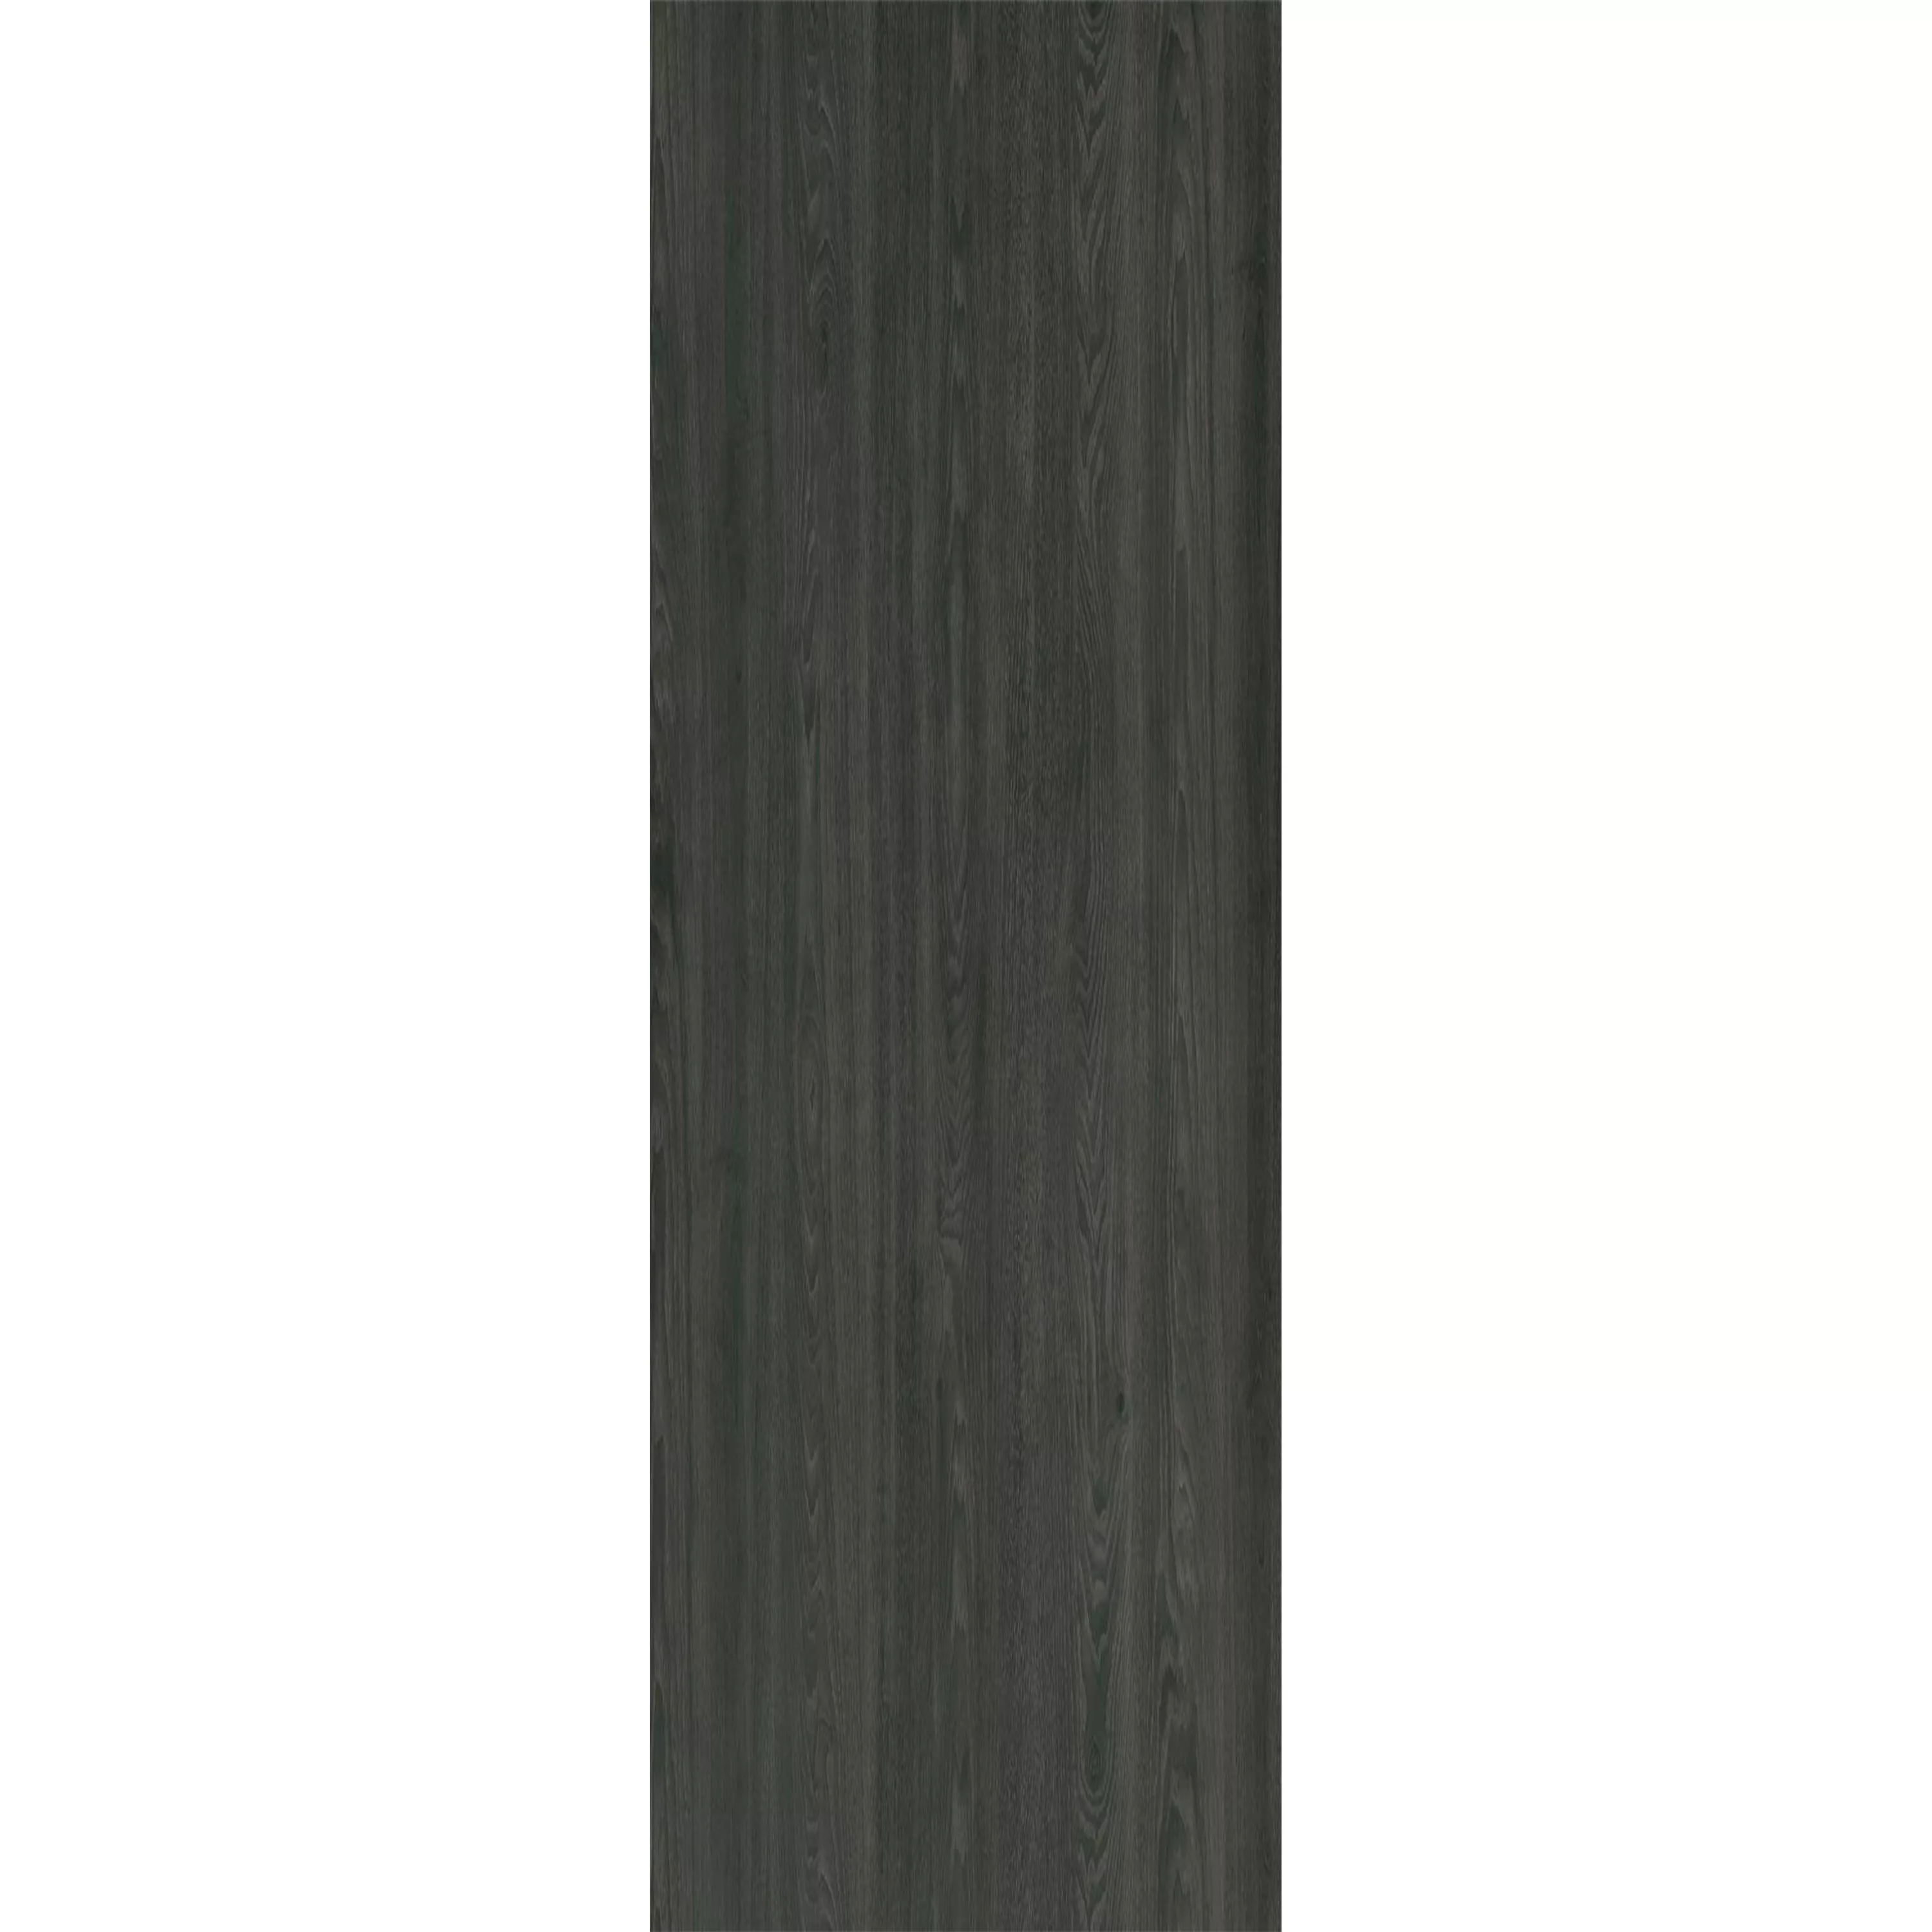 Płytki podłogowe winylowe Systemem Kliknięć Blackwood Antracyt 17,2x121cm